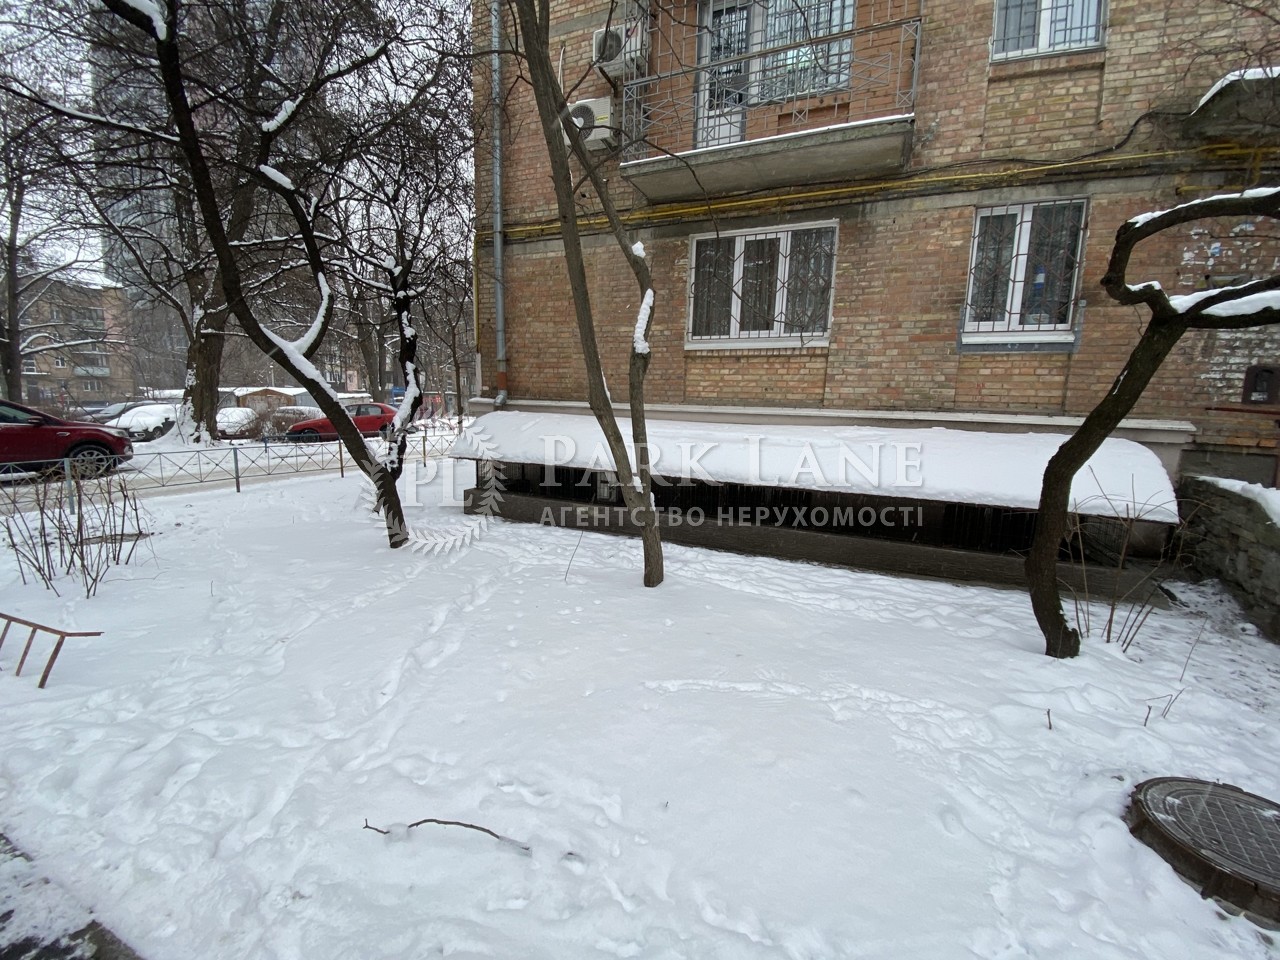  Нежилое помещение, ул. Телиги Елены, Киев, G-832453 - Фото 7